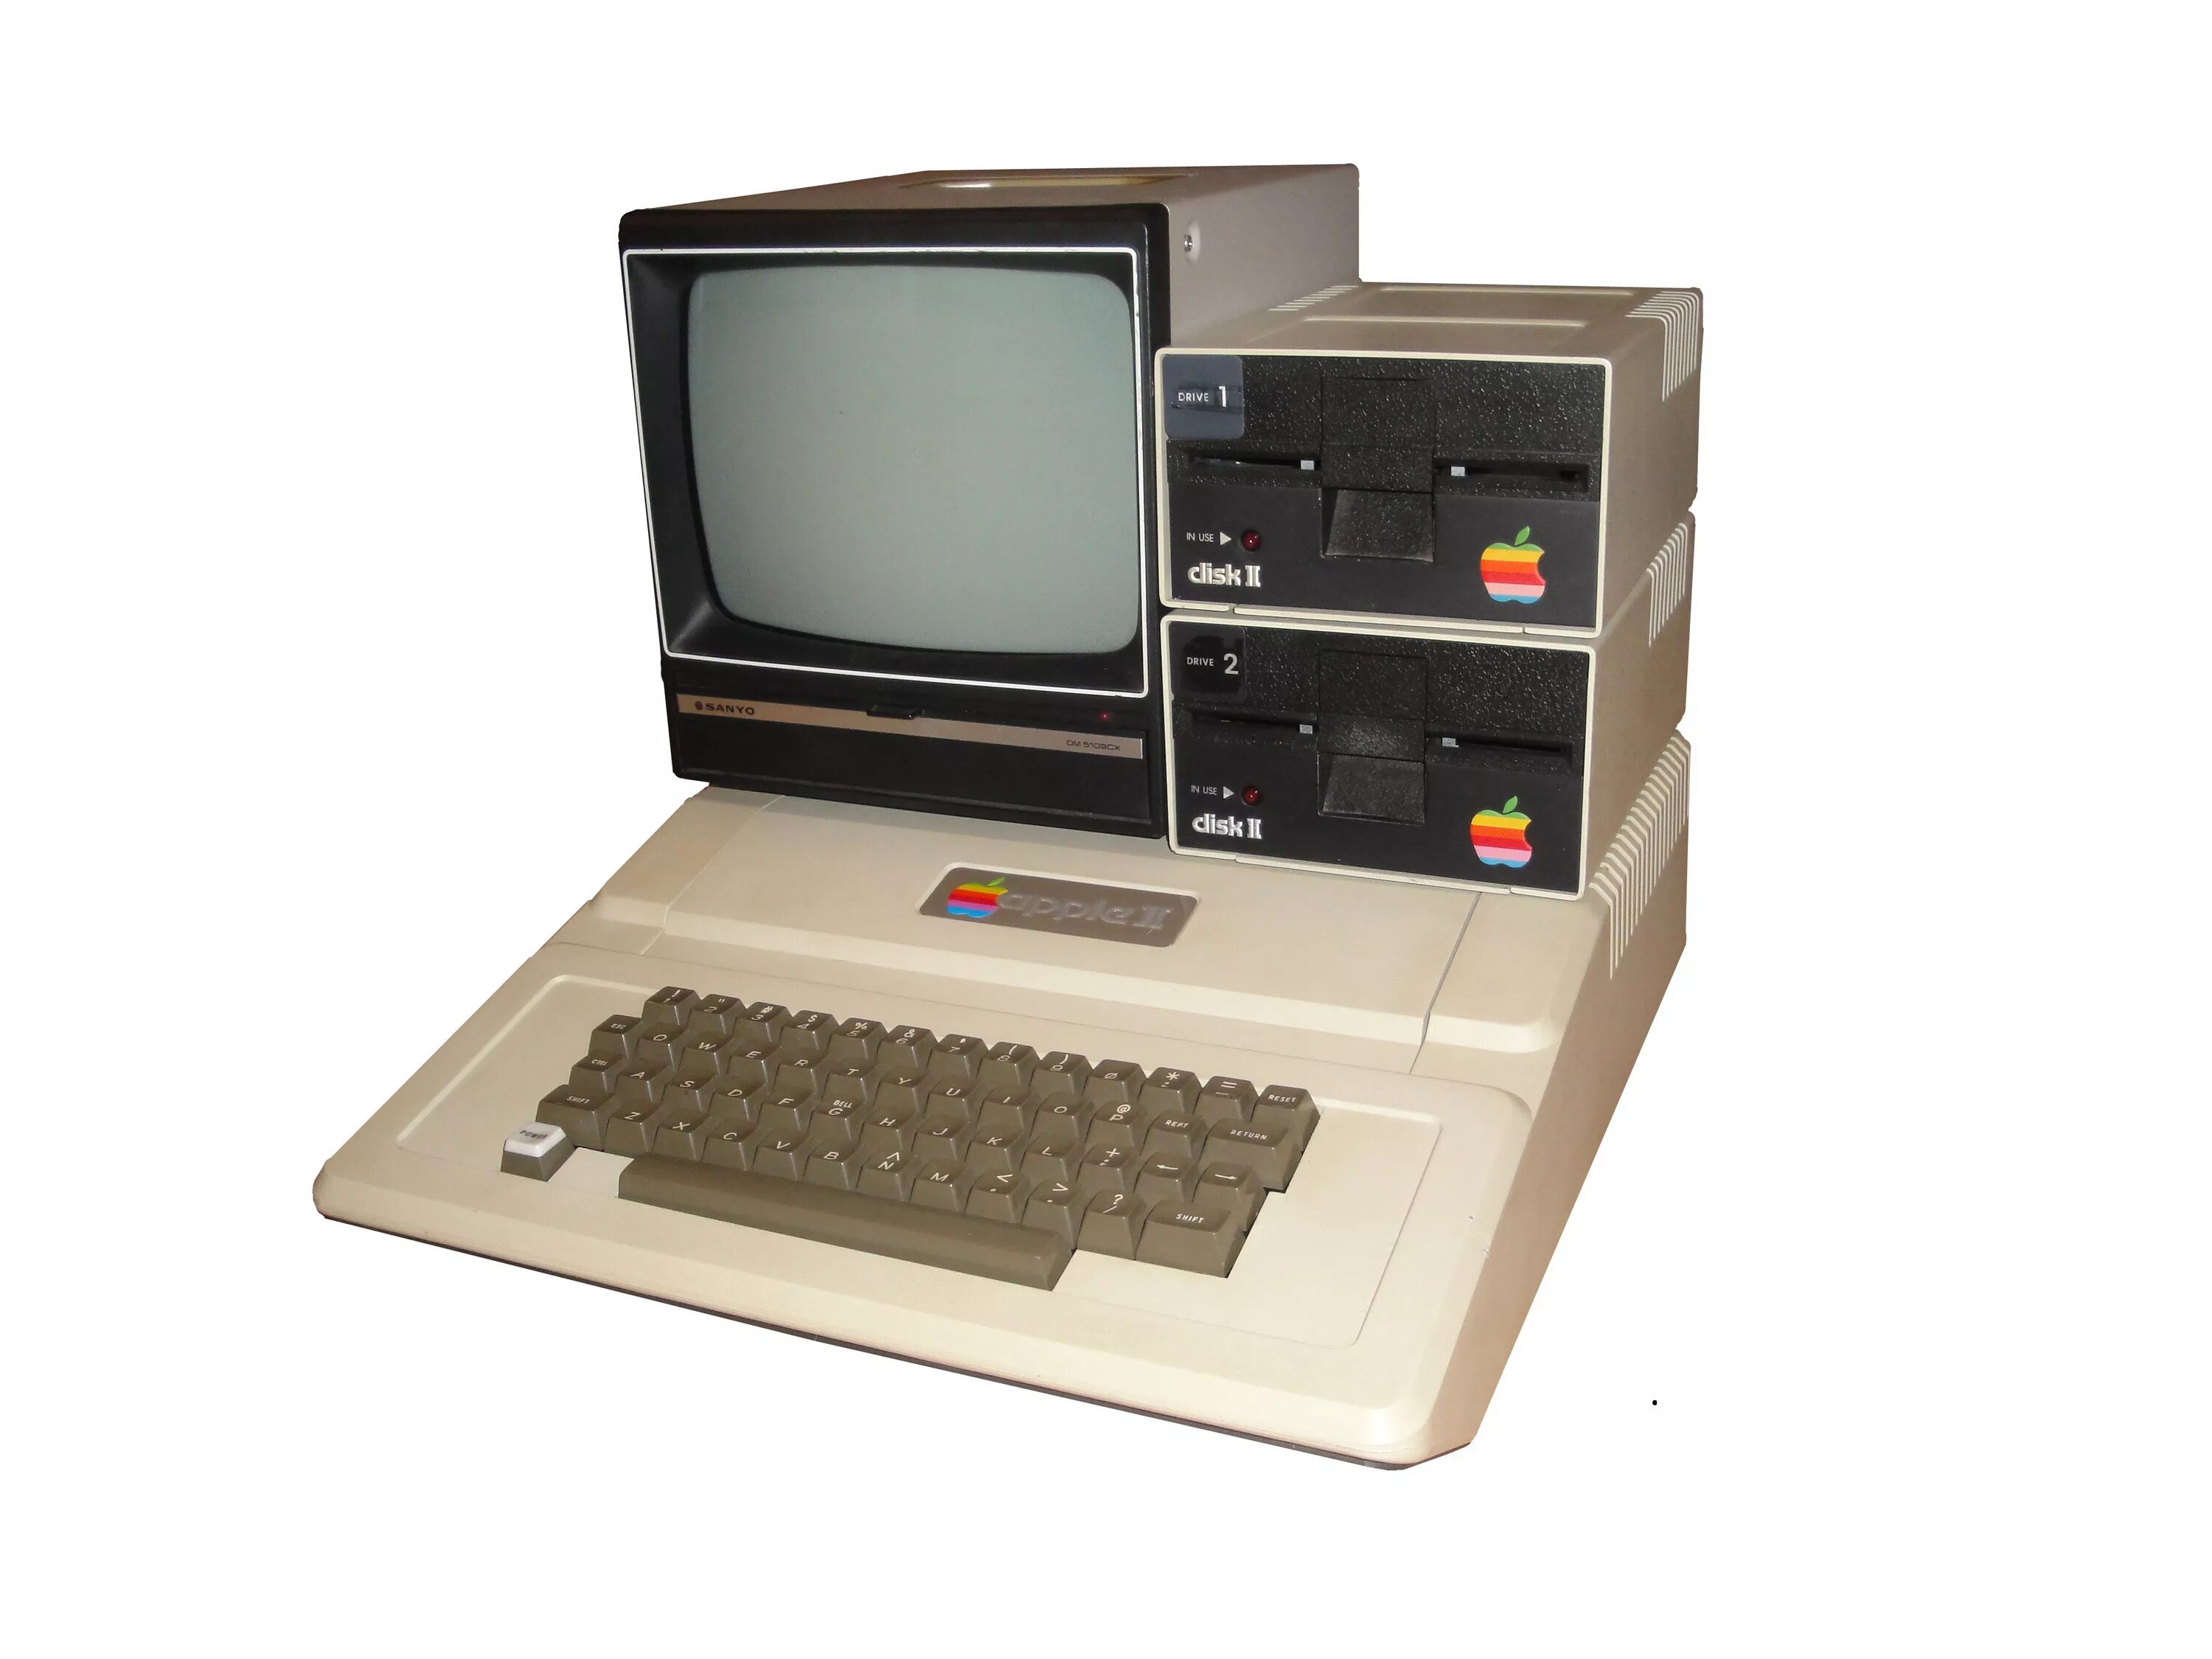 4 поколение купить. Apple II 1977. Первый компьютер Эппл 2. 4 Поколение ЭВМ эпл 1. Apple 2 компьютер 1977.